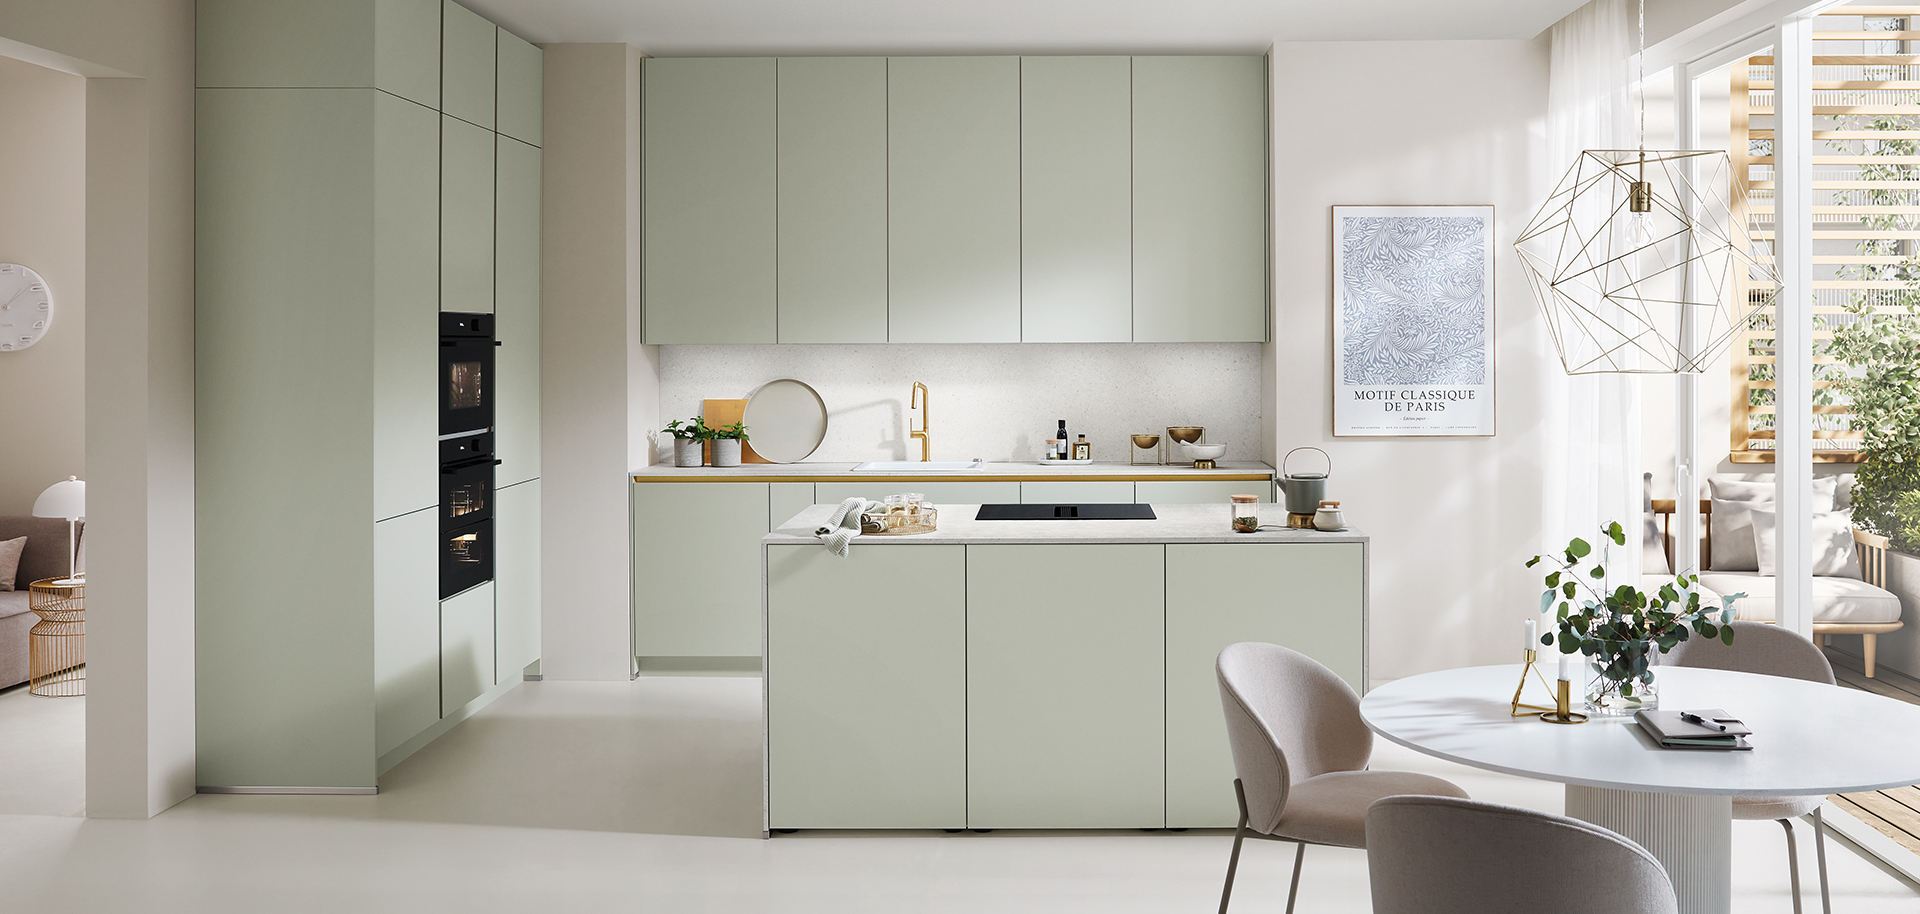 Moderne Küche mit pastellgrünen Schränken, integrierten Geräten und einem gemütlichen Essbereich, der minimalistisches Design und eine helle, luftige Atmosphäre präsentiert.